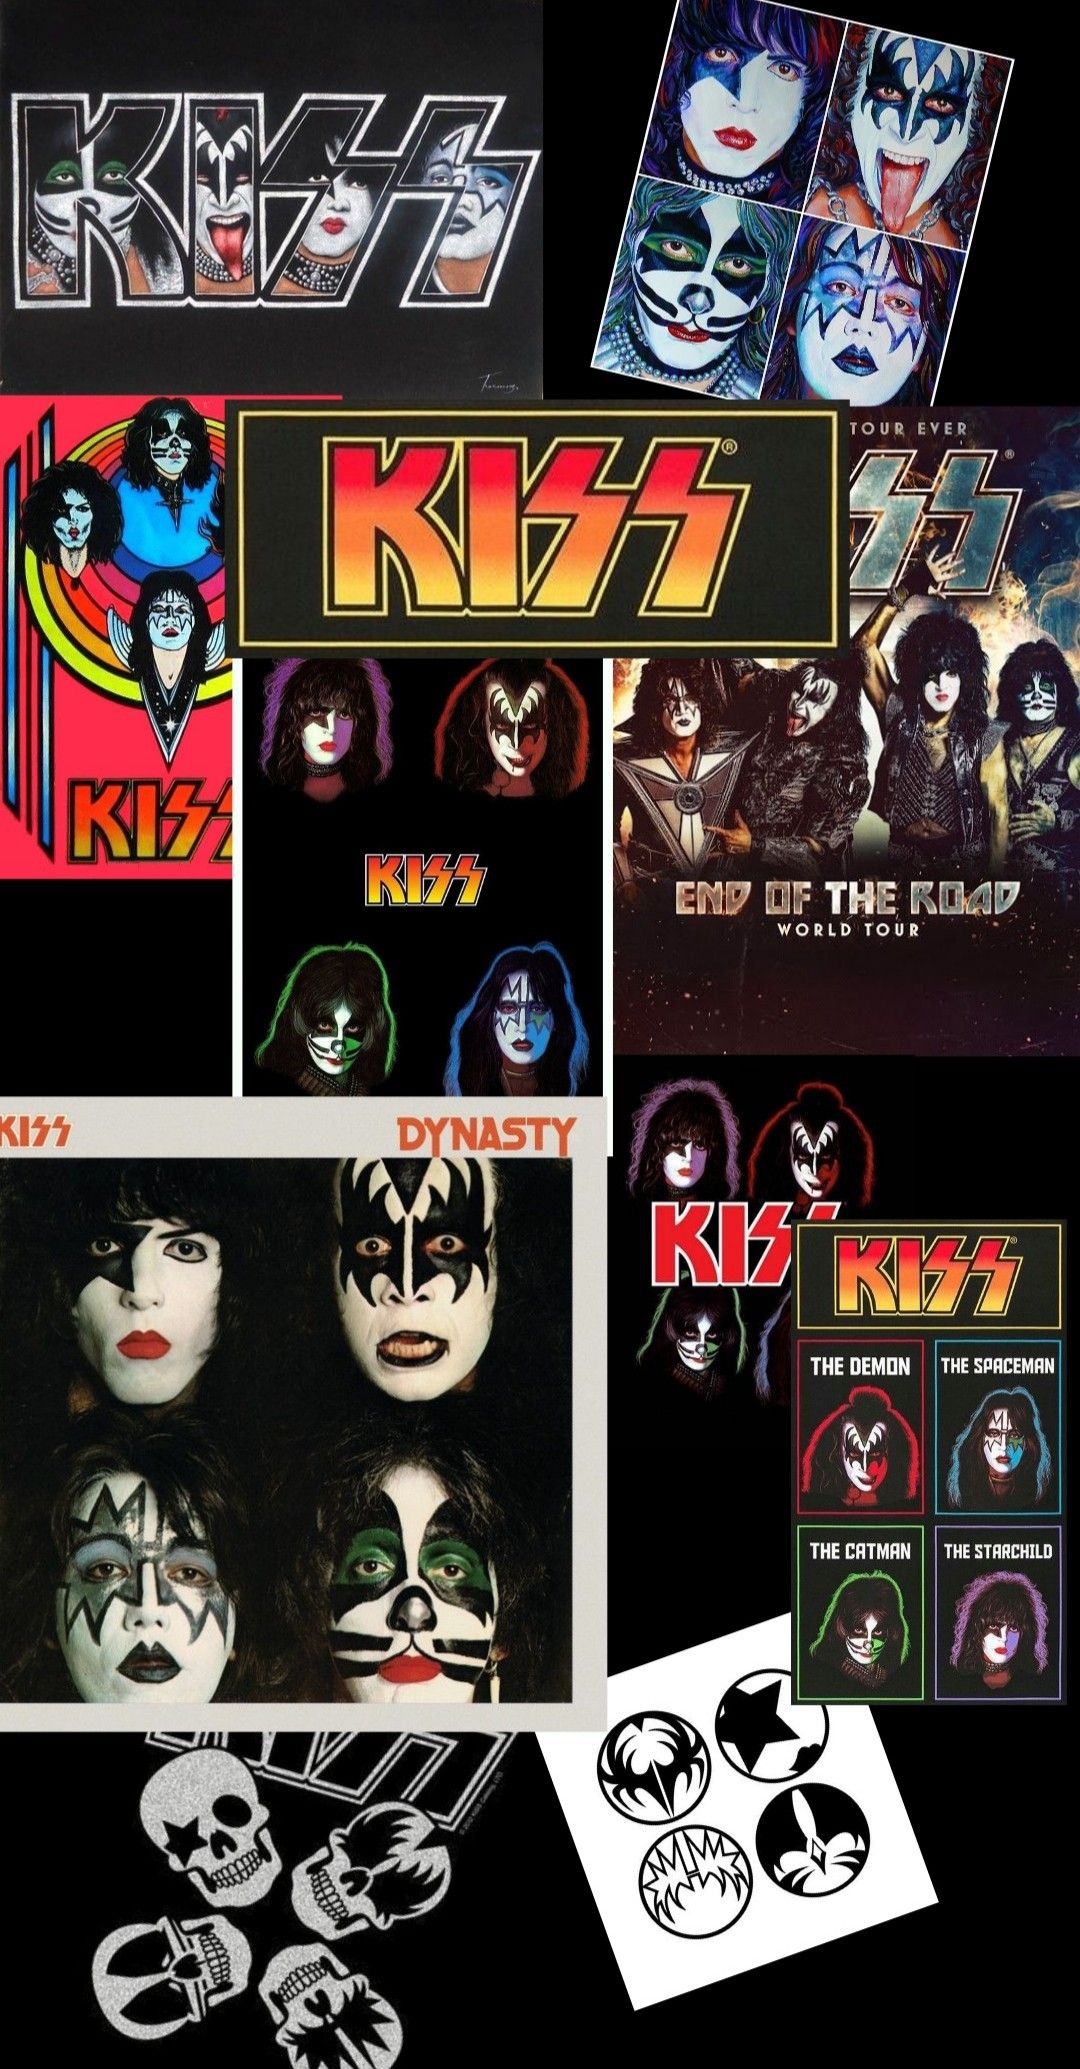 KISS band wallpaper. Band wallpaper, Rock band posters, Kiss band